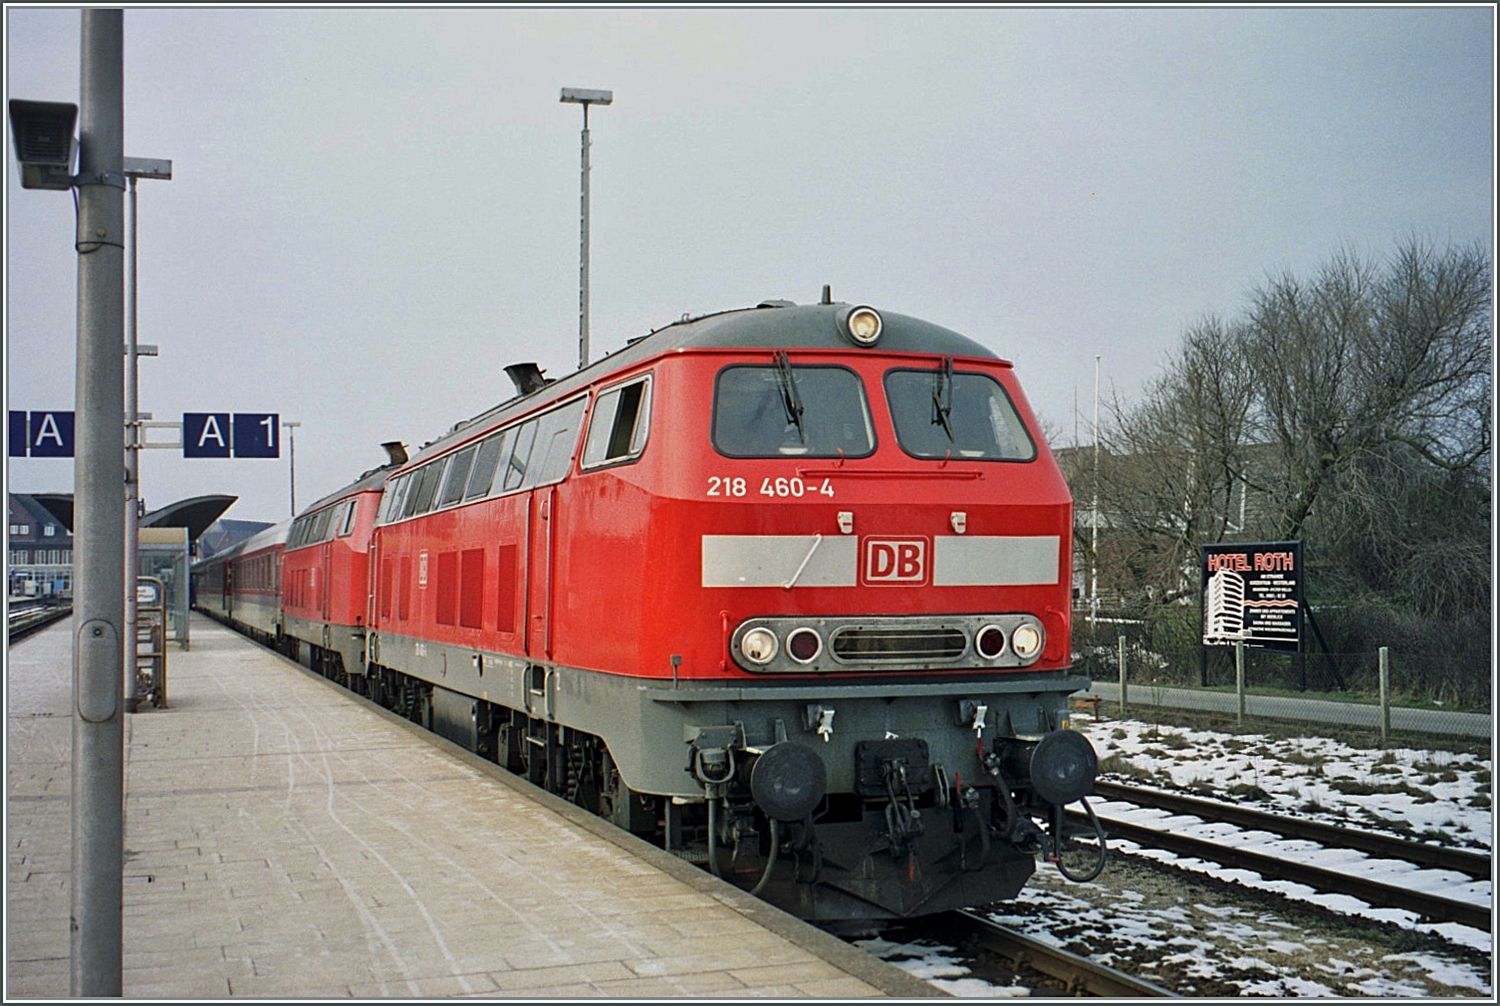 Zwei DB 218 mit der 218 460-4 an der Spitze warten mit ihrem IC in Westerland (Sylt) auf die Abfahrt.

Analogbild vom März 2001 